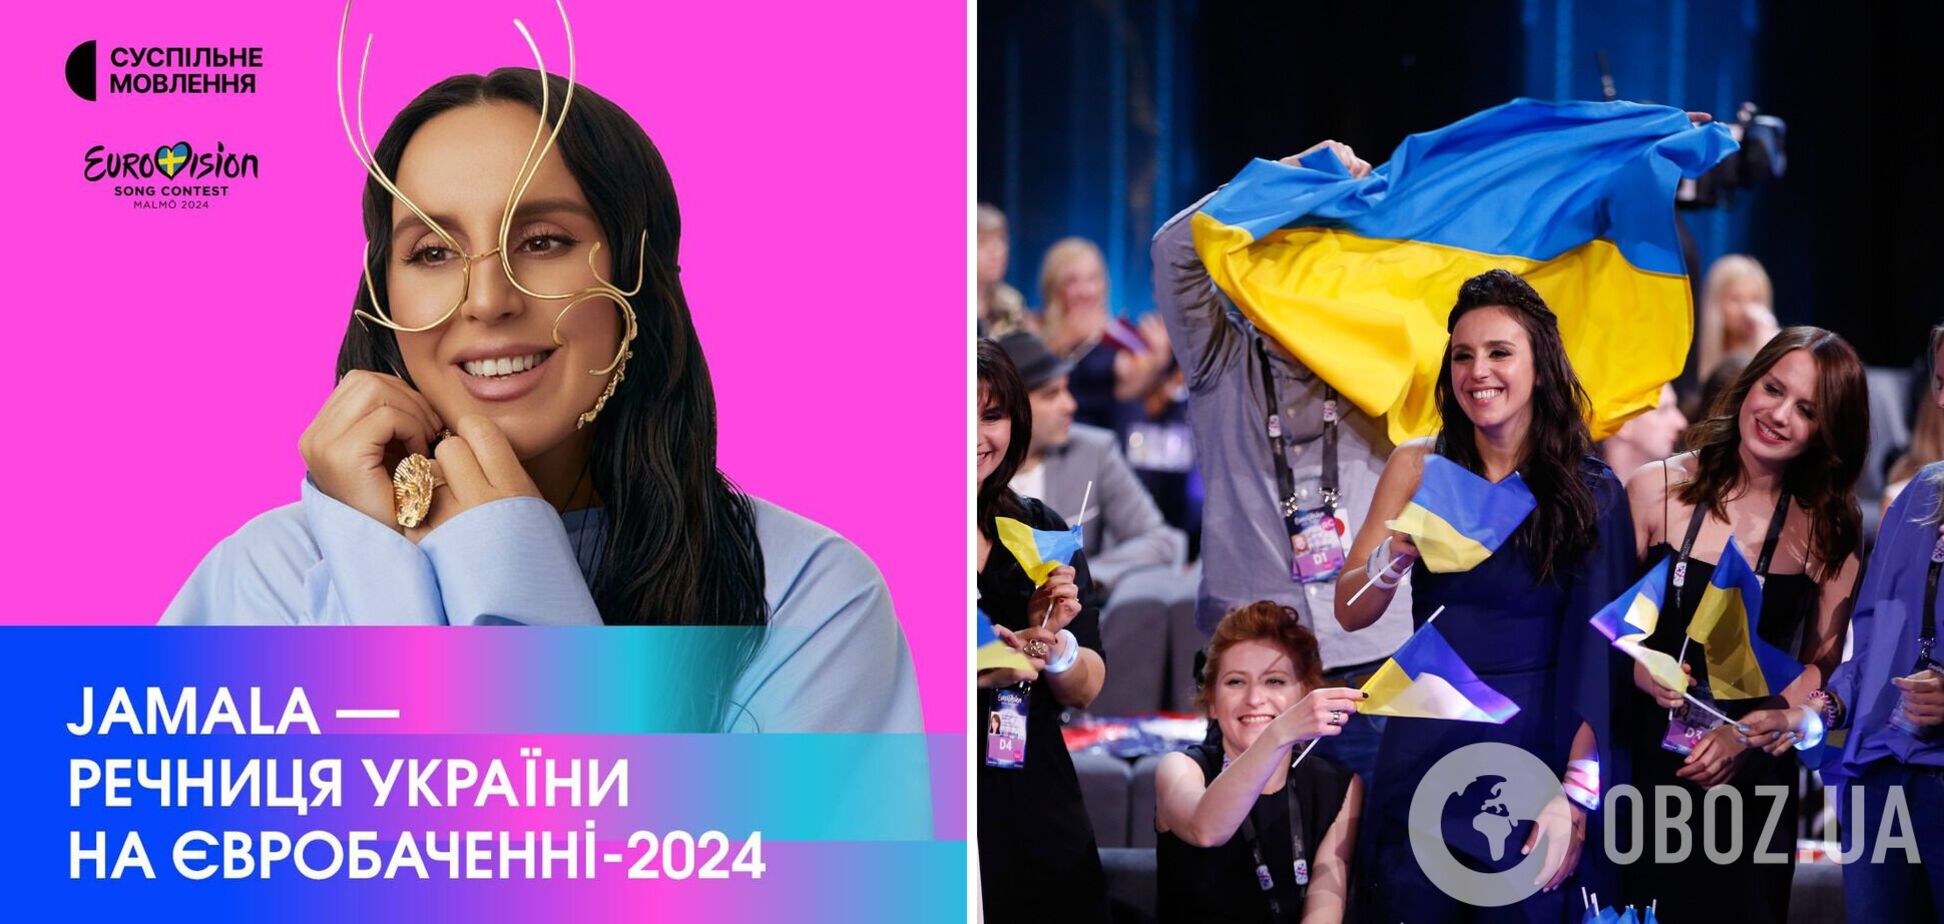 Джамала станет спикером Украины на Евровидении 2024: певица объявит баллы Национального жюри в гранд-финале